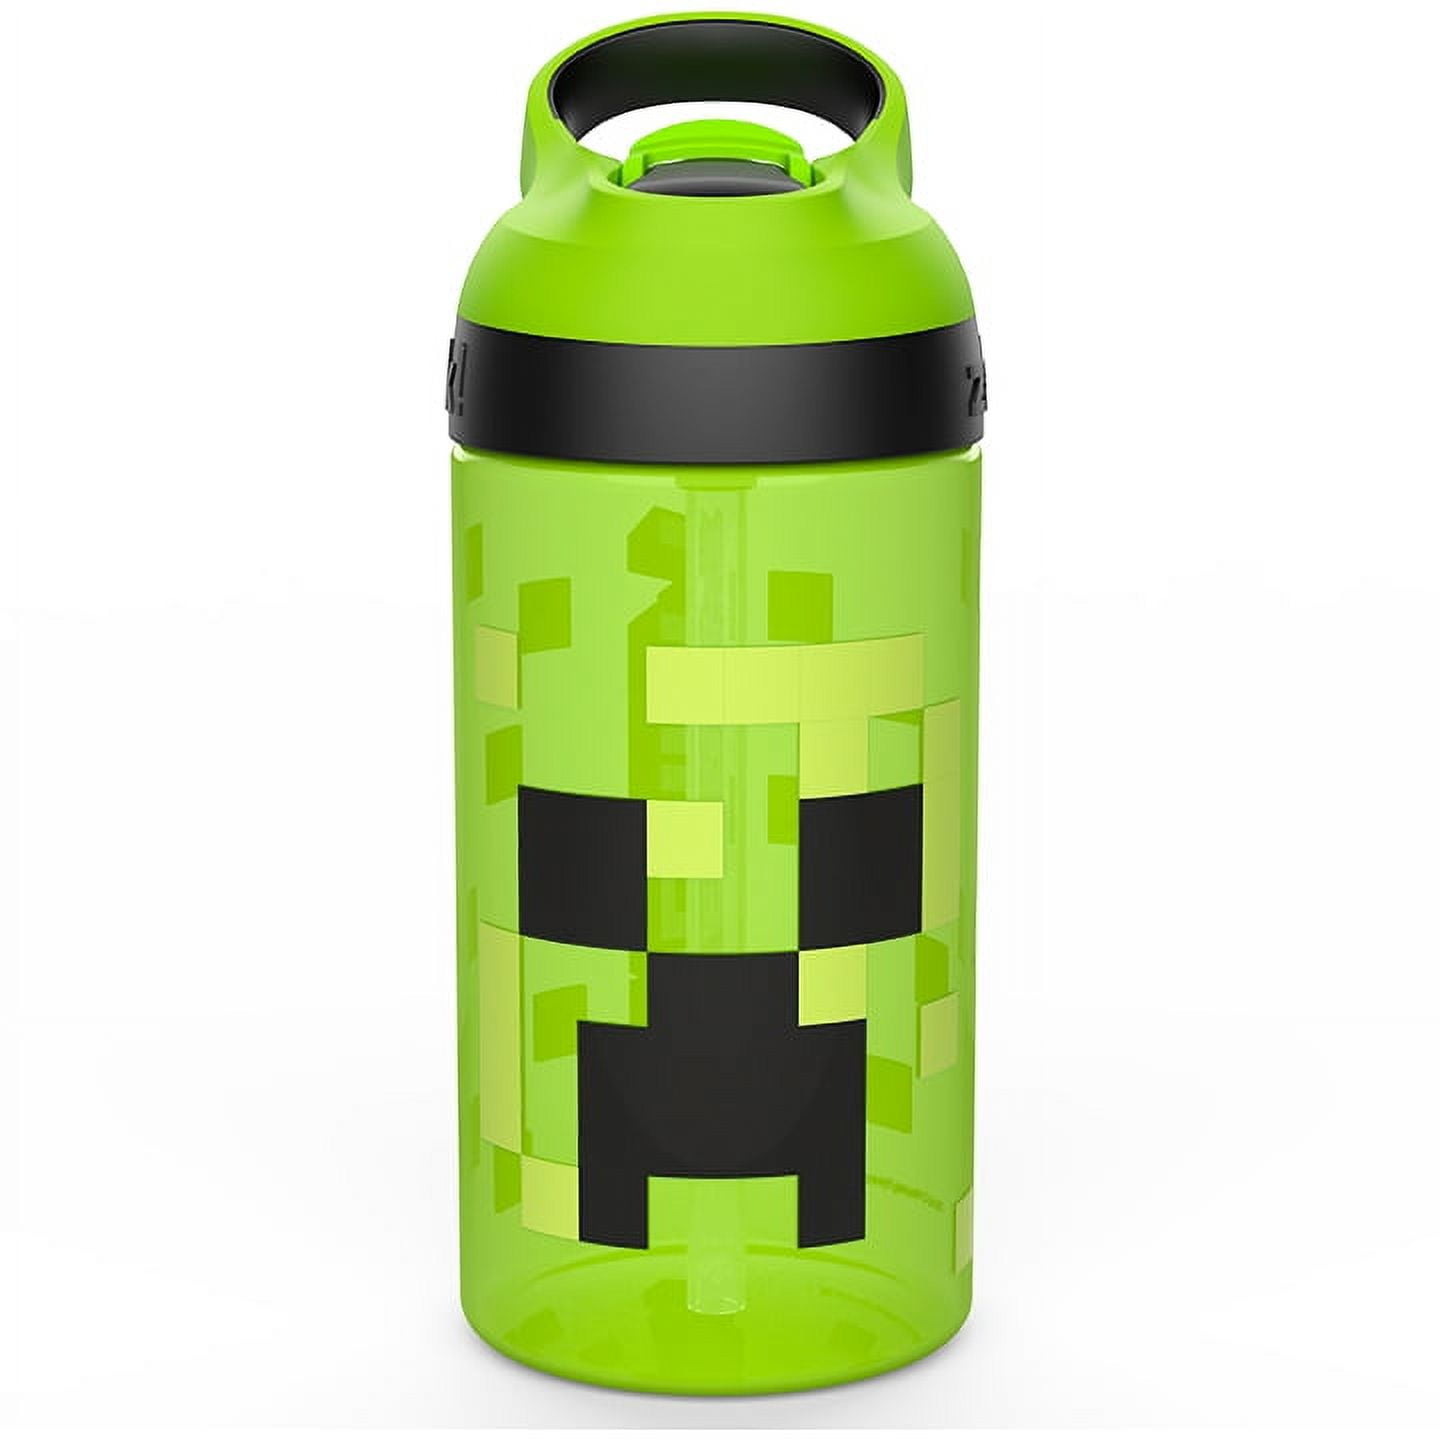 Minecraft Creeper Mackenzie 12oz Water Bottle